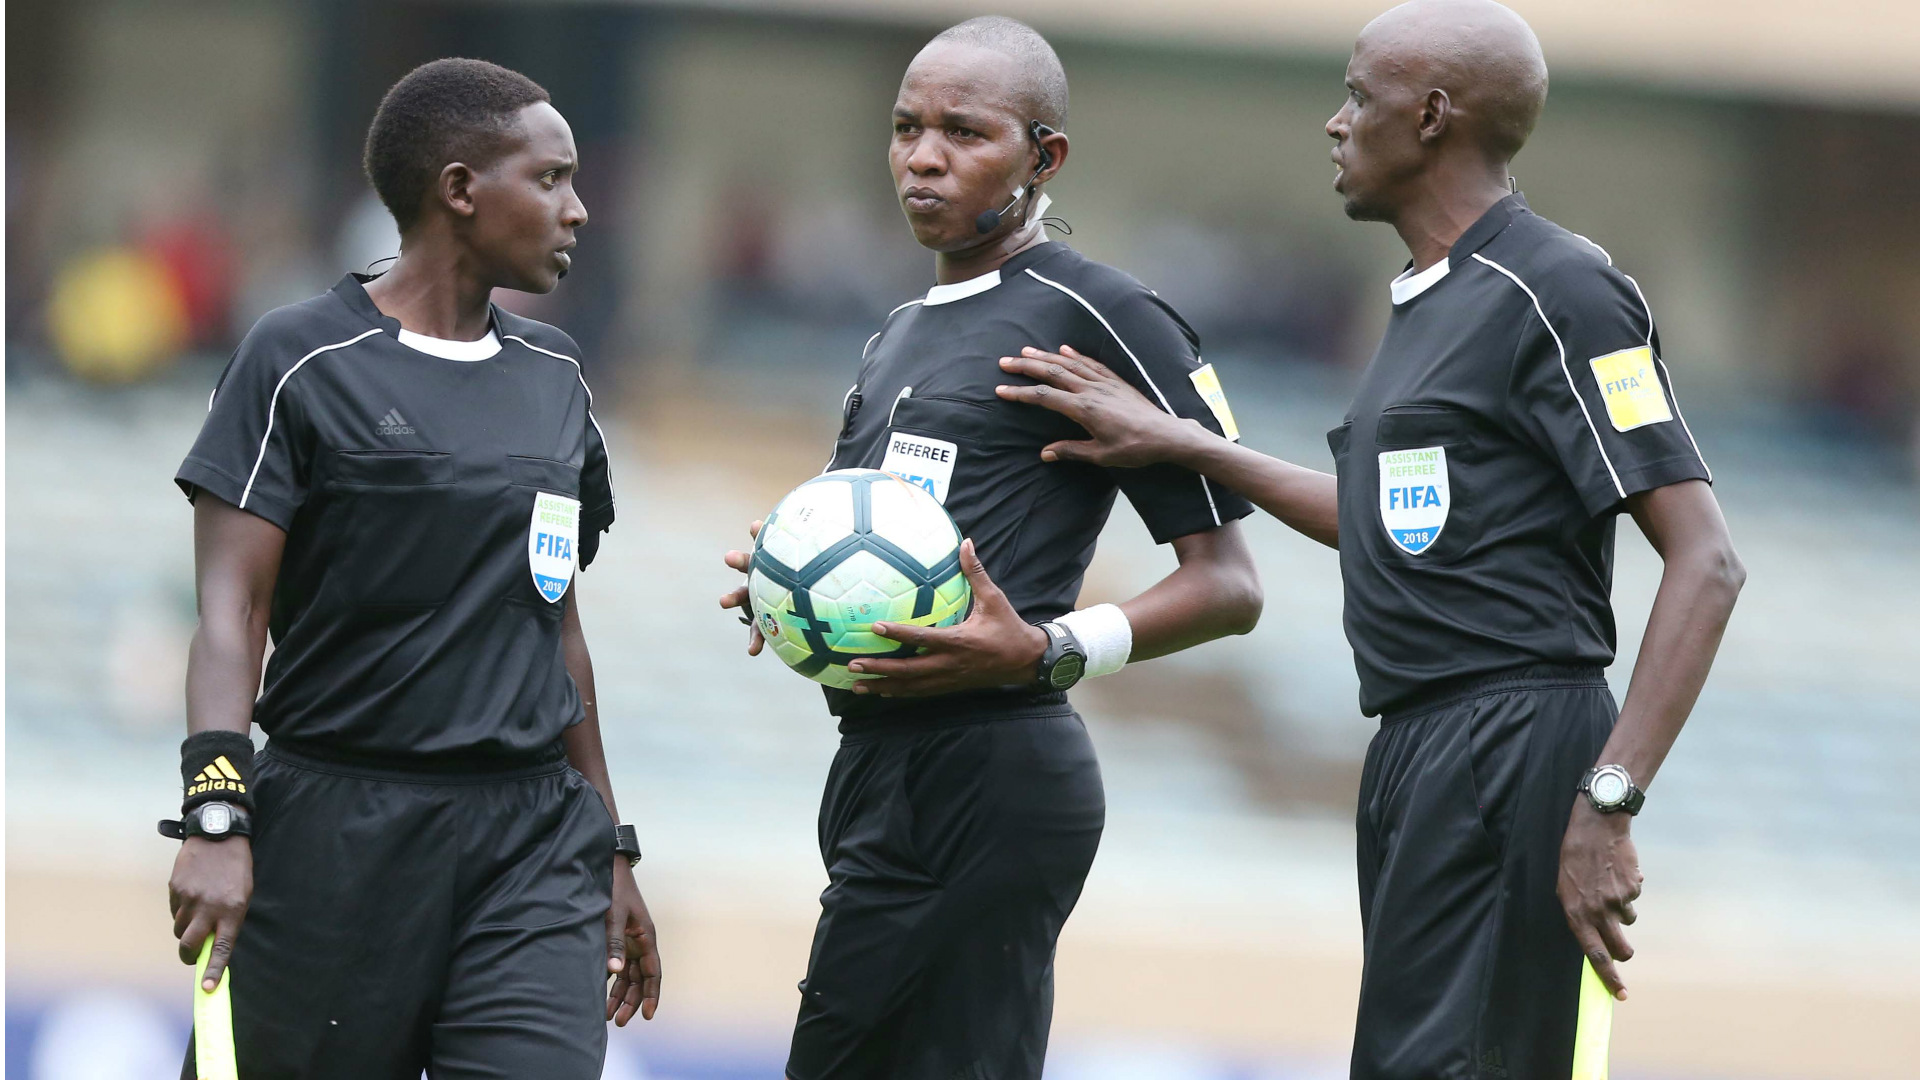 Des arbitres FIFA kenyans echouent aux tests physiques.